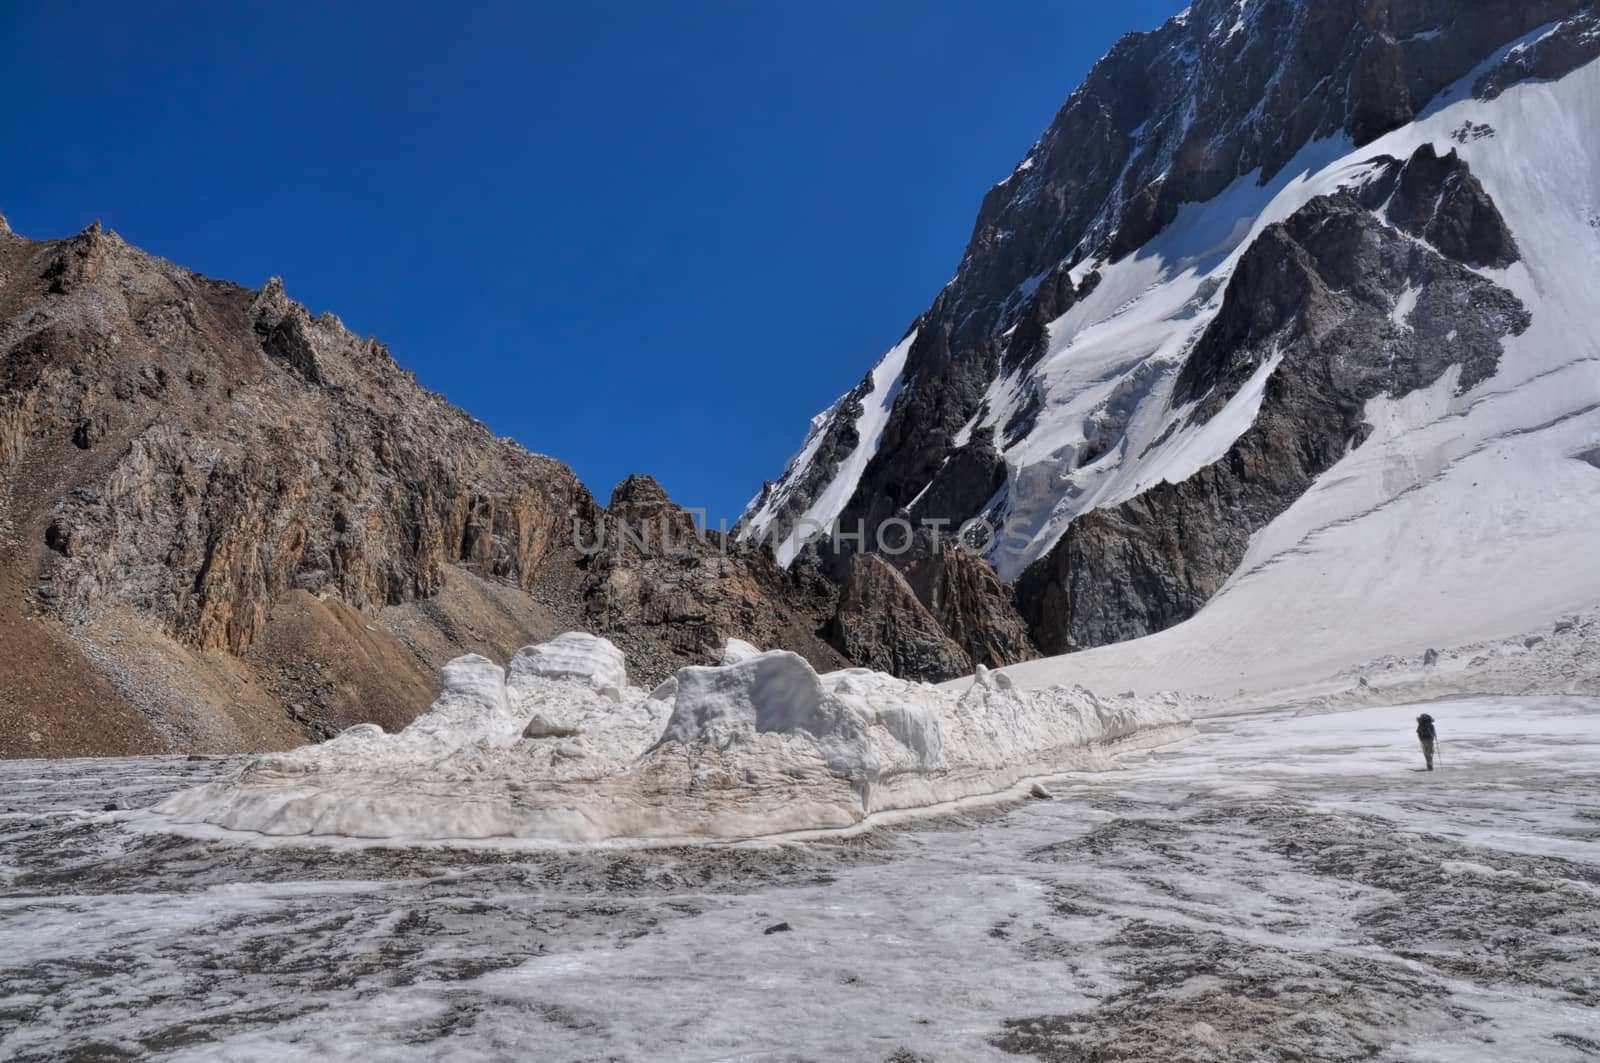 Glacier below snow-covered highest peaks in Tien-Shan mountain range in Kyrgyzstan